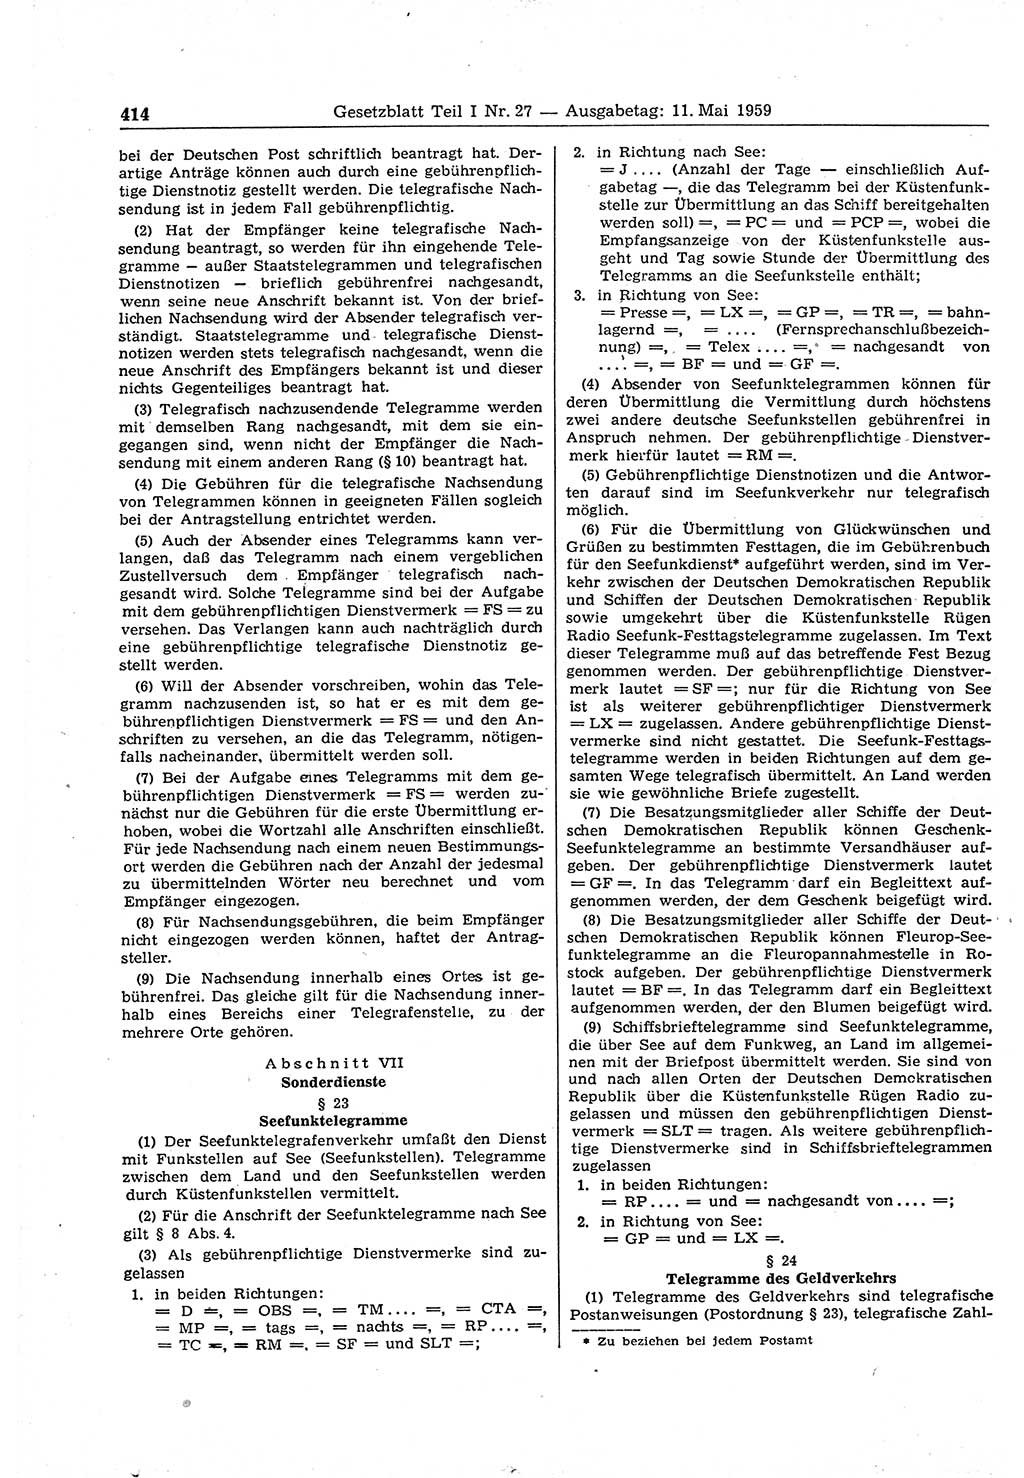 Gesetzblatt (GBl.) der Deutschen Demokratischen Republik (DDR) Teil Ⅰ 1959, Seite 414 (GBl. DDR Ⅰ 1959, S. 414)